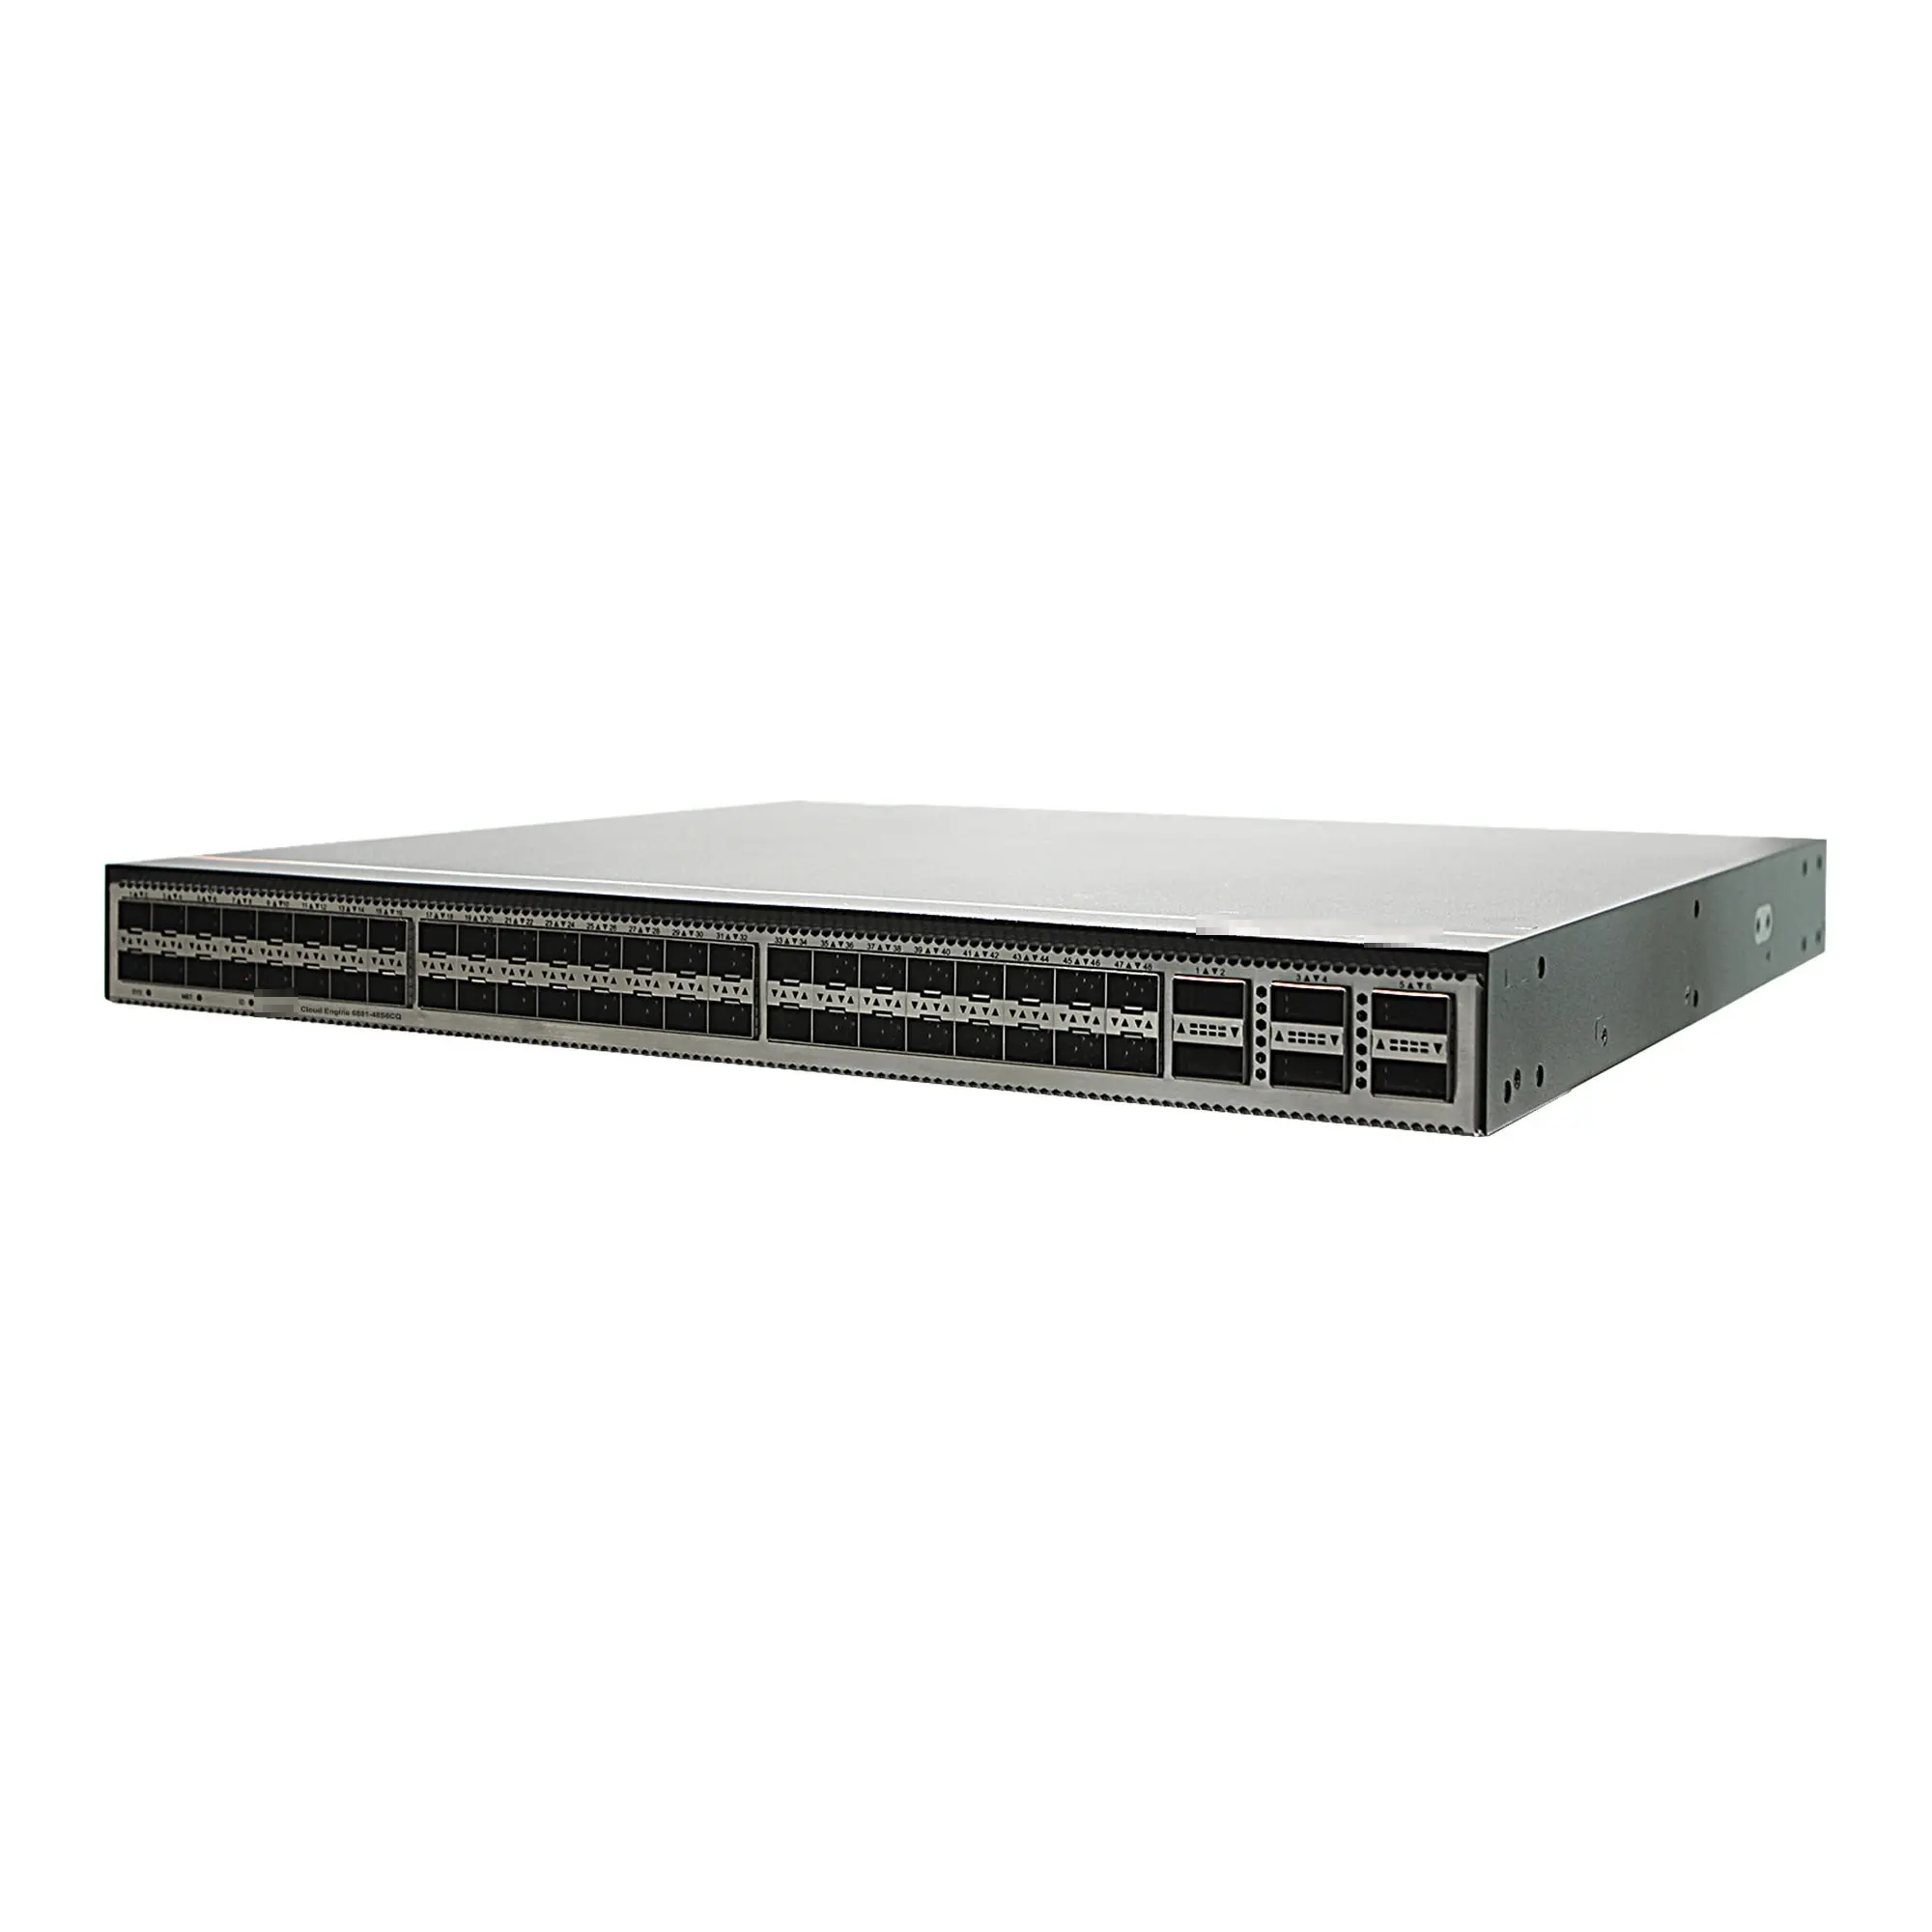 Ethernet-коммутатор CE6881-48S6CQ-B 48 портовый коммутатор для Прямая поставка от производителя